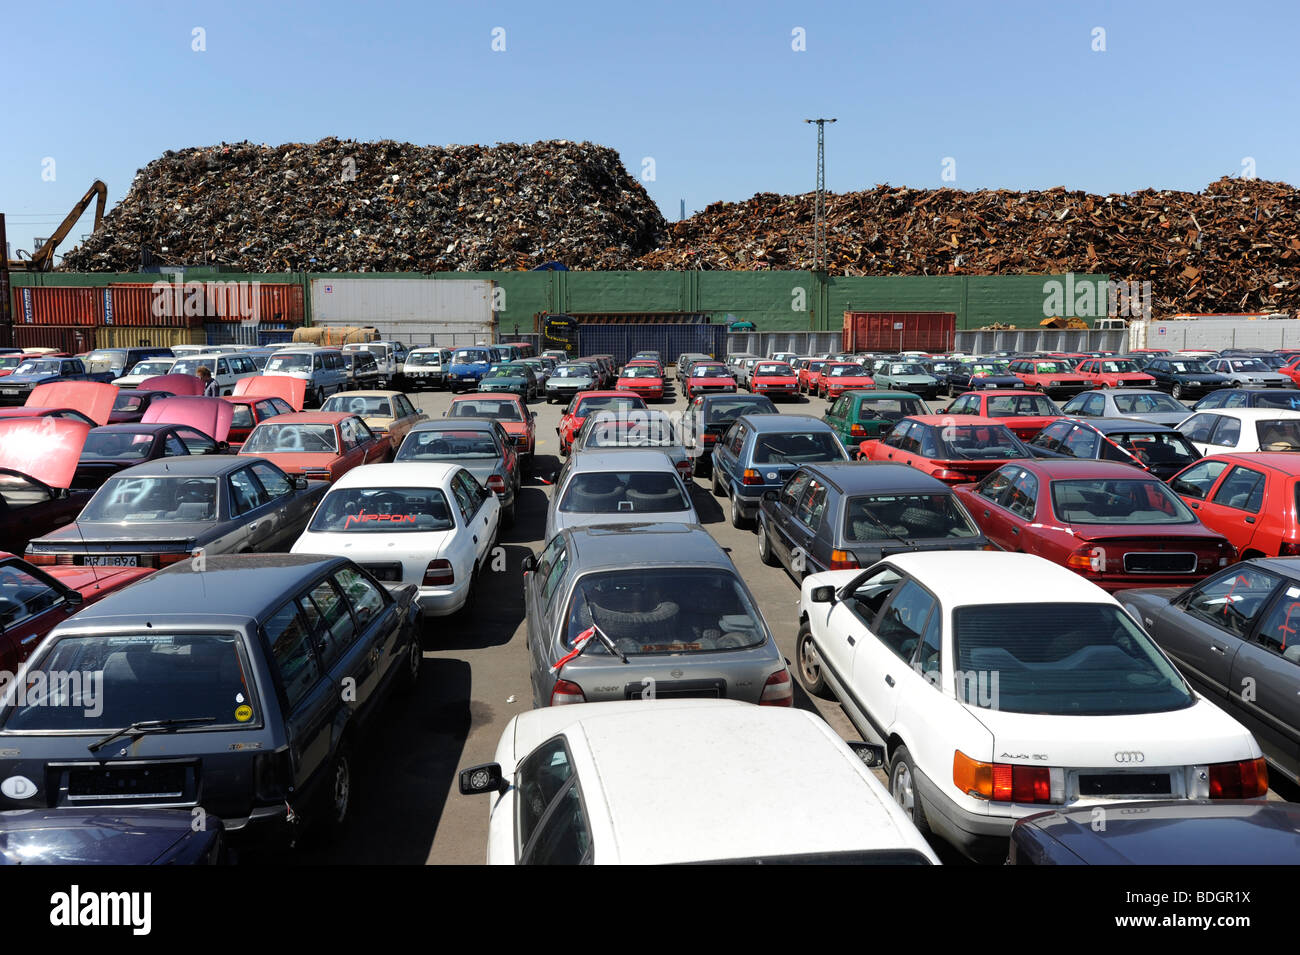 Alemania Hamburgo , utiliza los coches viejos esperan exportar a África Cotonou Benin en el muelle en el puerto de Hamburgo Foto de stock